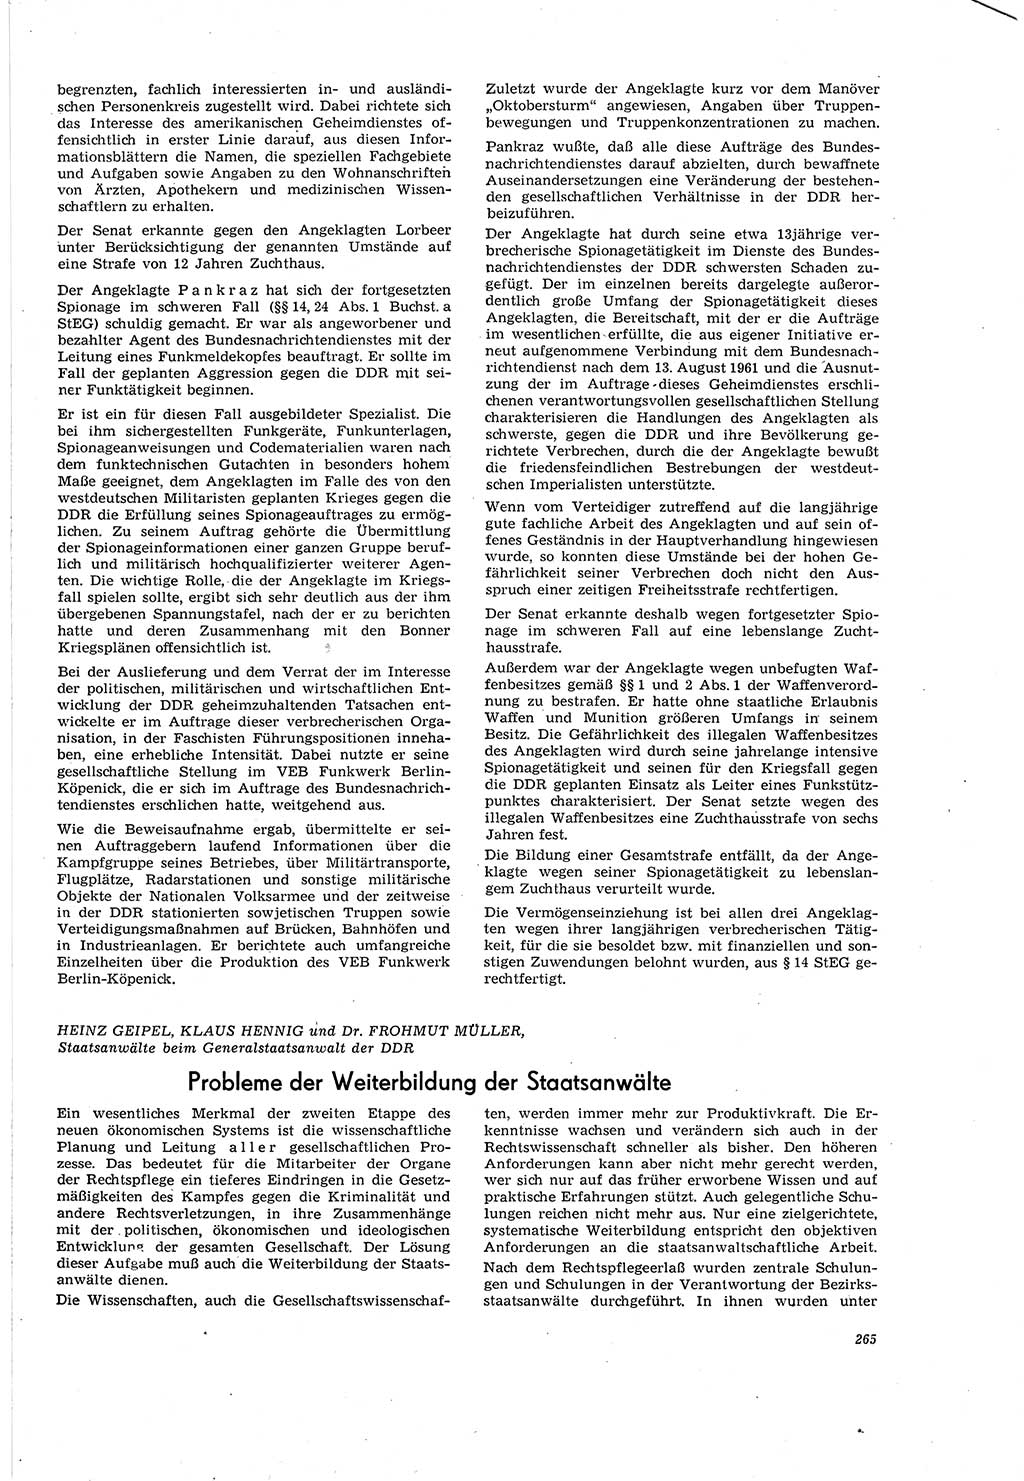 Neue Justiz (NJ), Zeitschrift für Recht und Rechtswissenschaft [Deutsche Demokratische Republik (DDR)], 20. Jahrgang 1966, Seite 265 (NJ DDR 1966, S. 265)